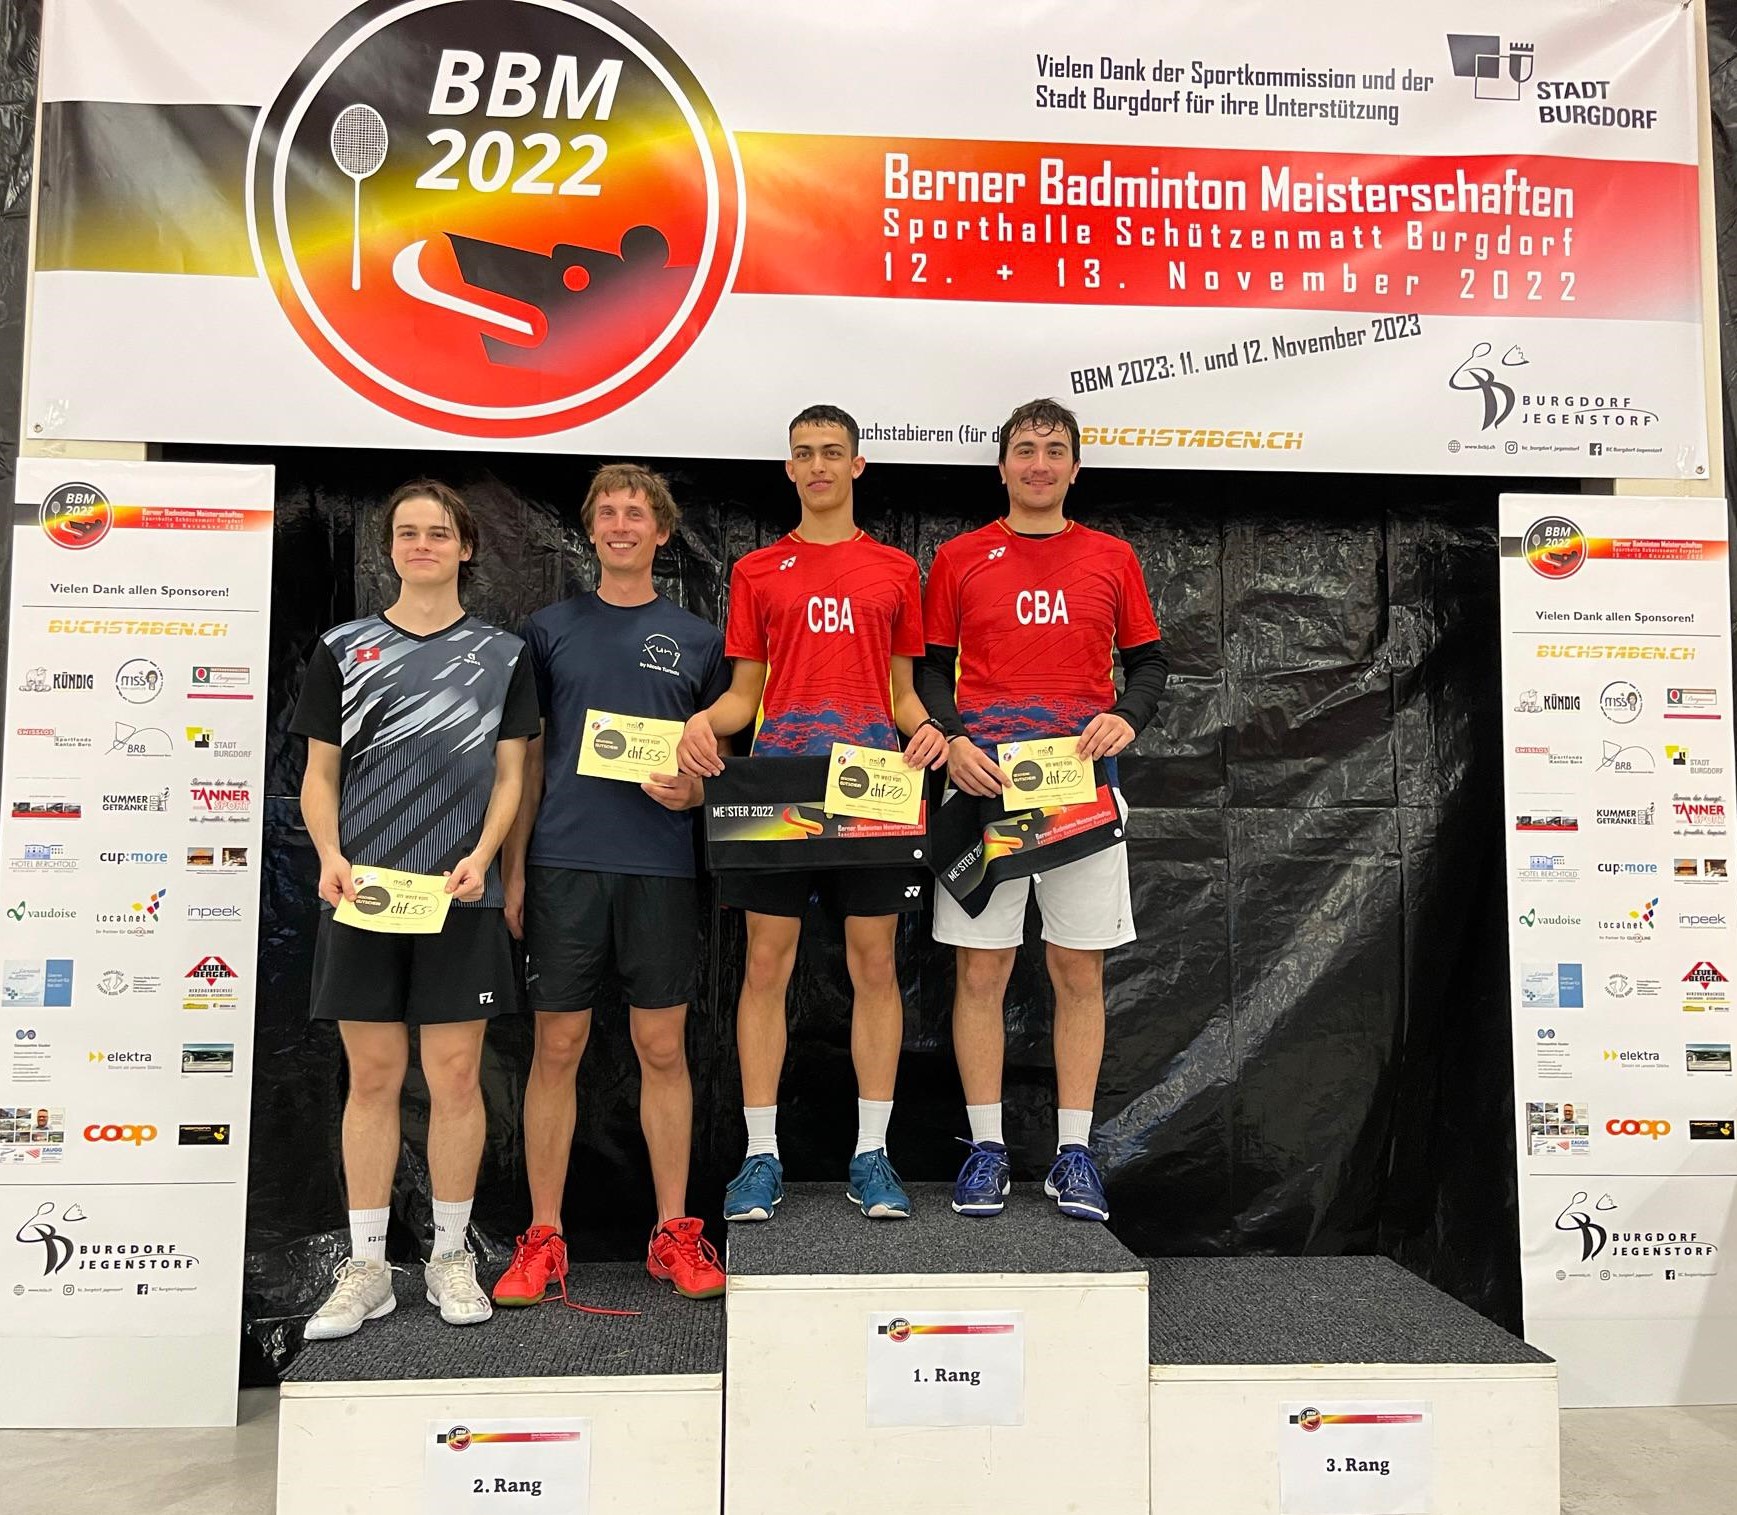 Berner Badminton Meisterschaften BBM 2022